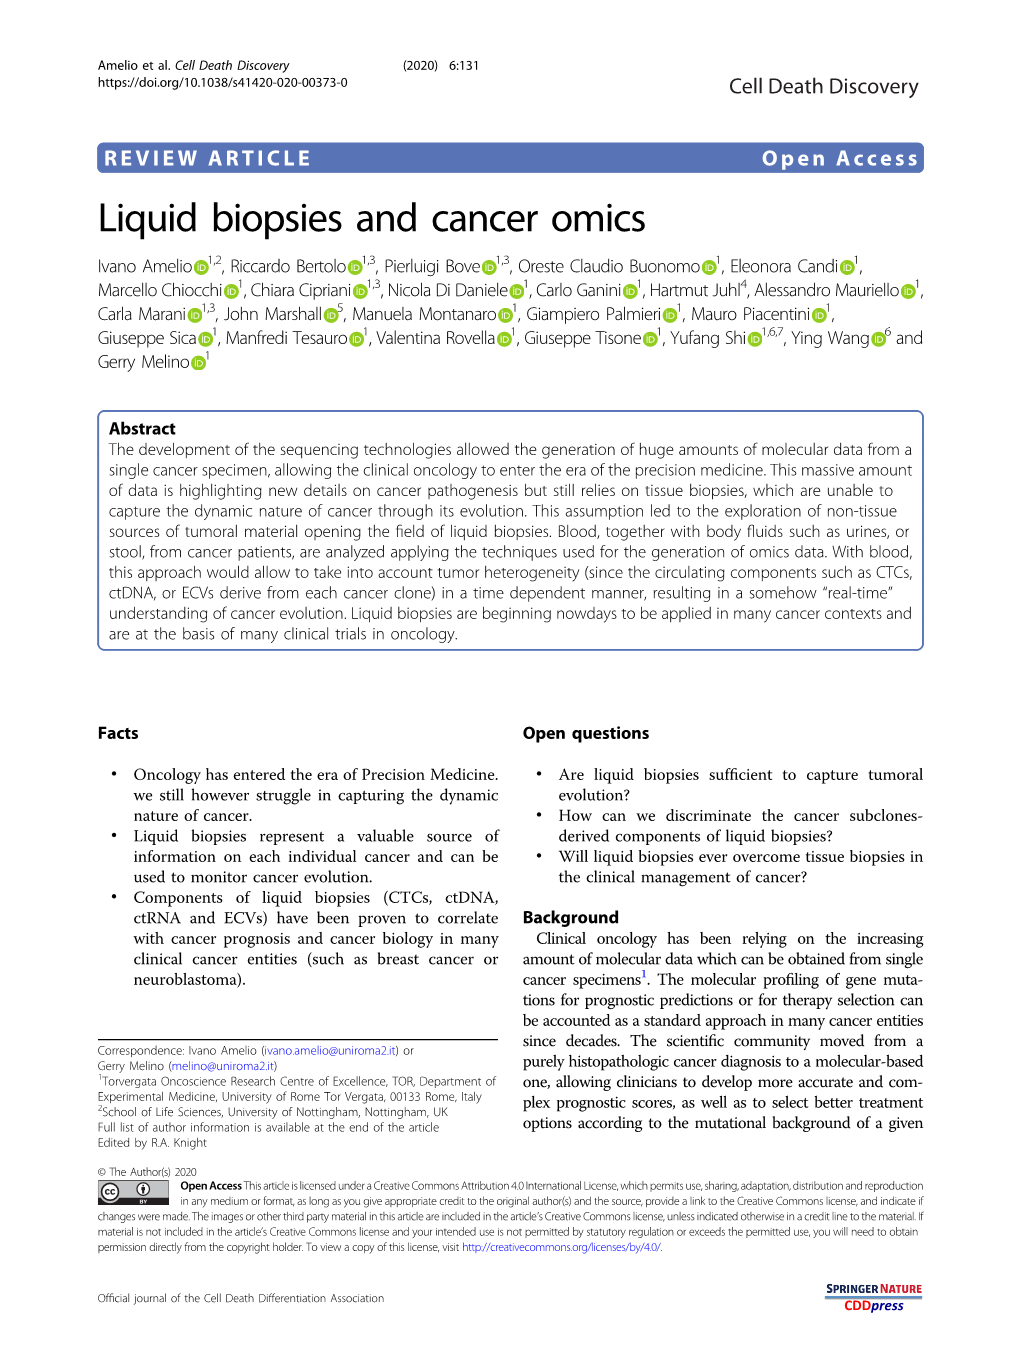 Liquid Biopsies and Cancer Omics